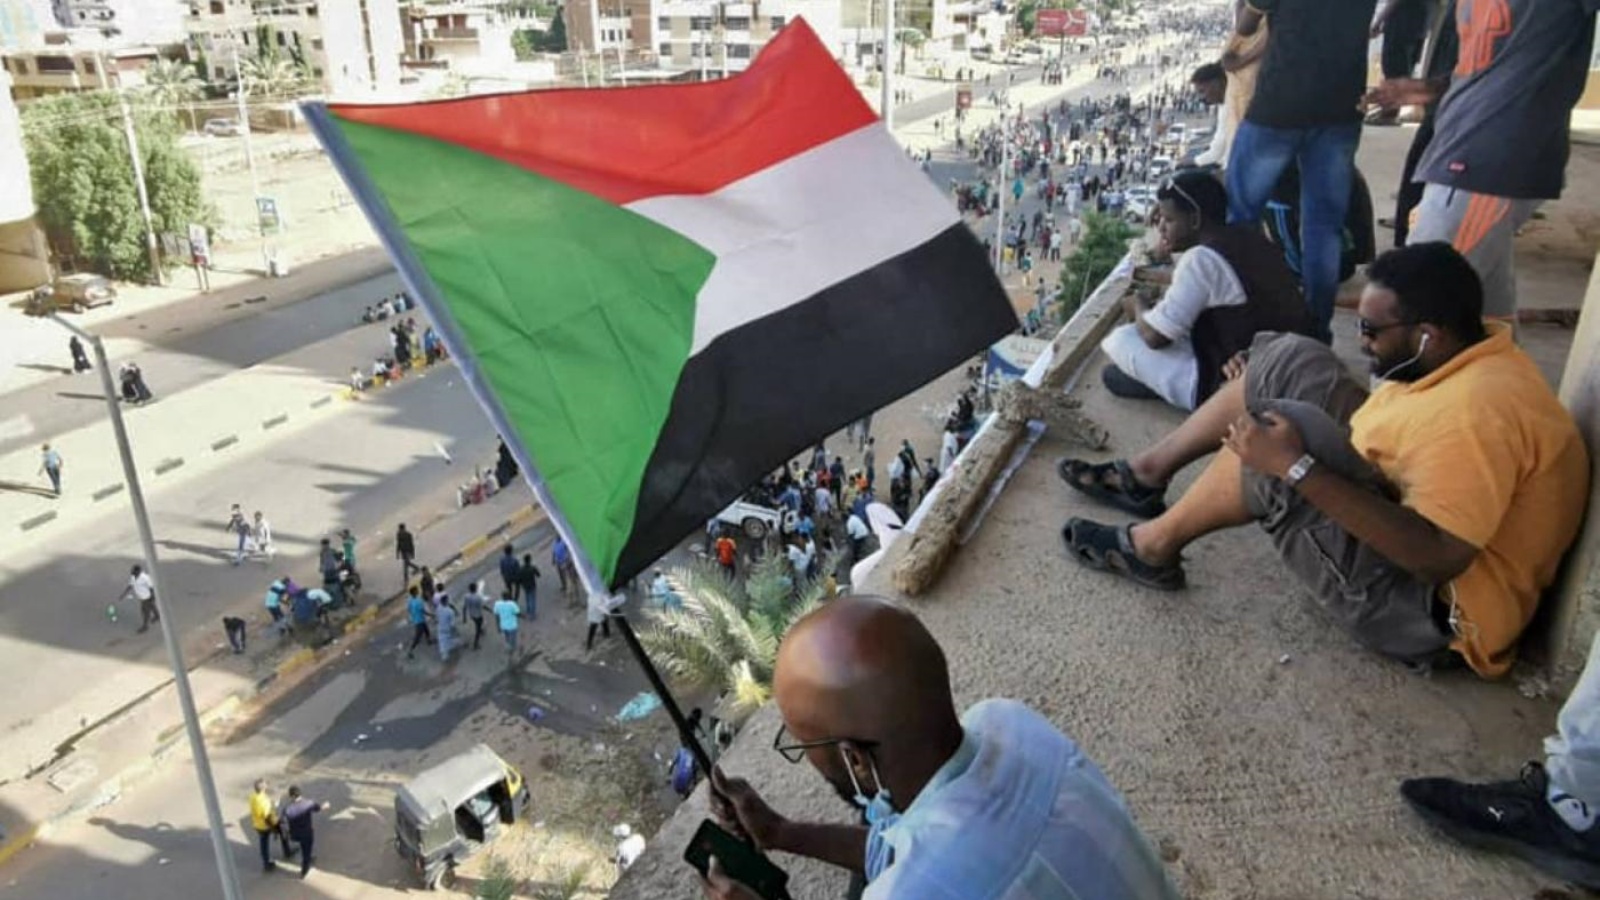 أشخاص يتظاهرون في السودان احتجاجًا على الإنقلاب العسكري. تشرين الأول/ أكتوبر 2021.